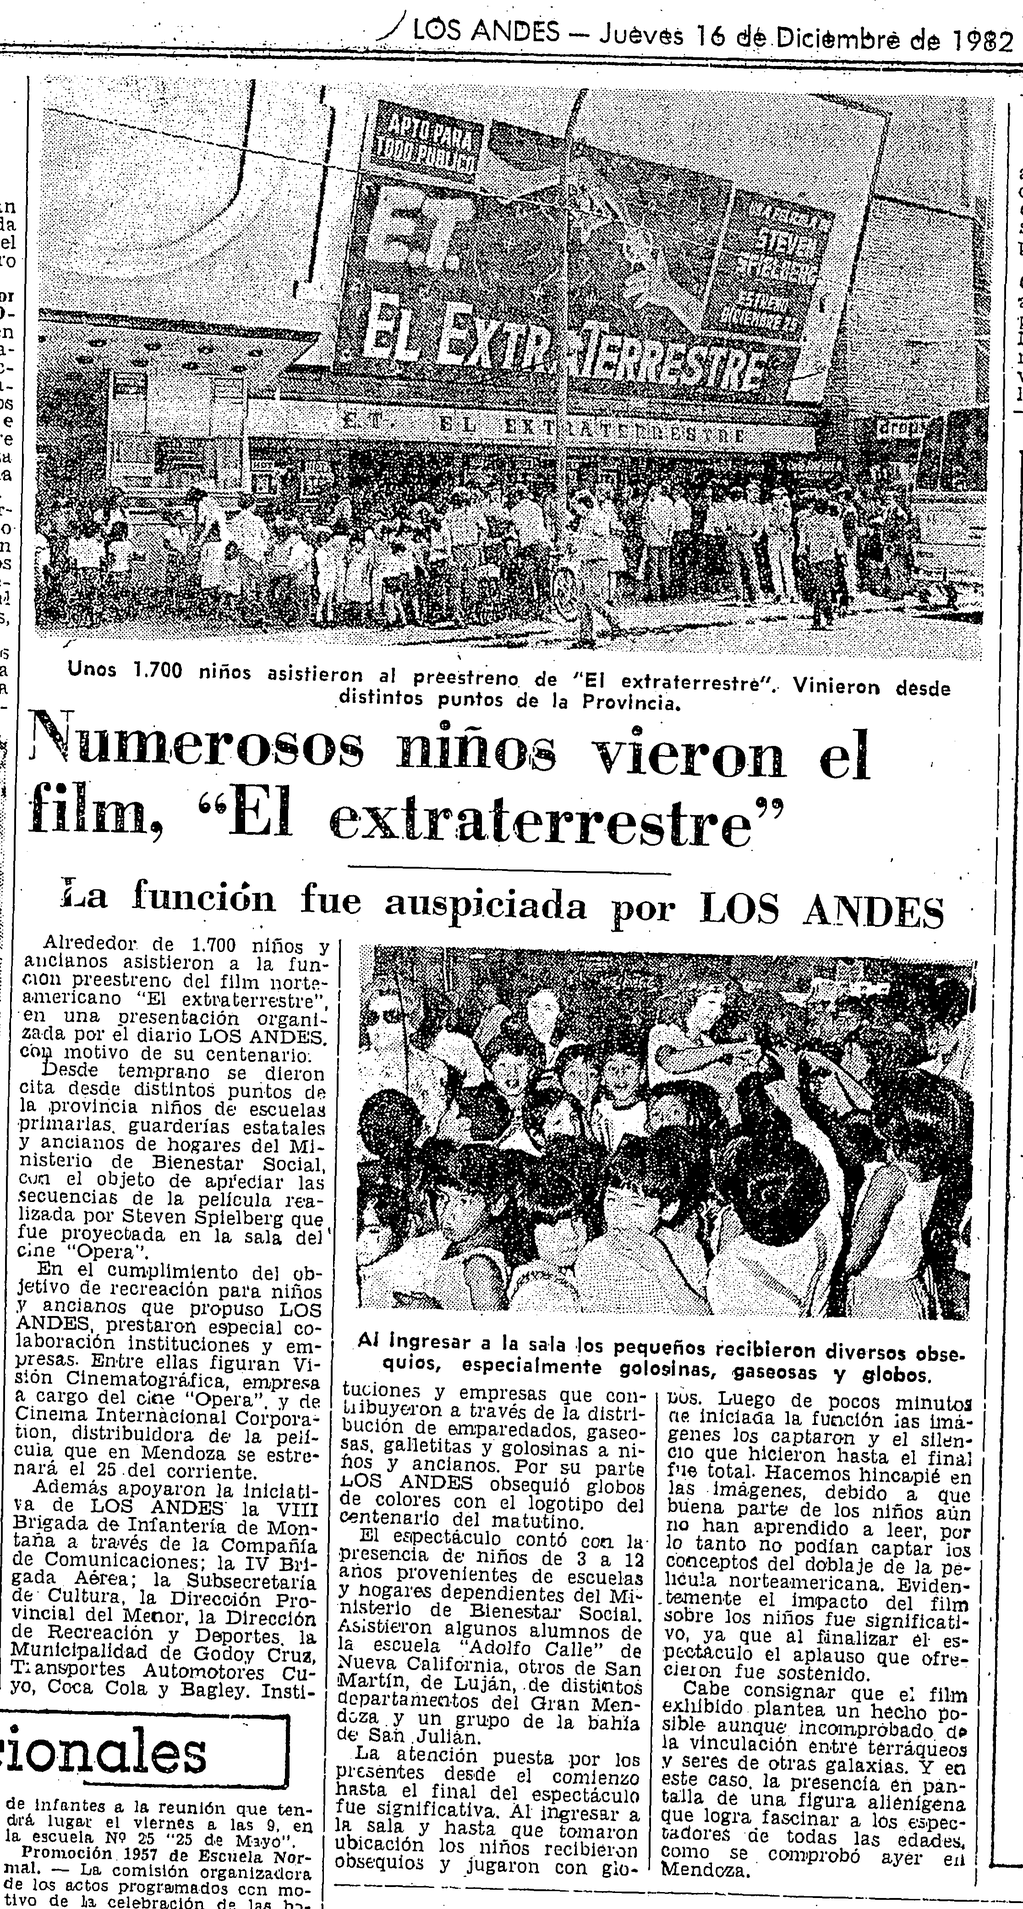 Los Andes cubrió el evento y lo publicó al día siguiente. Foto: Archivo DLA.